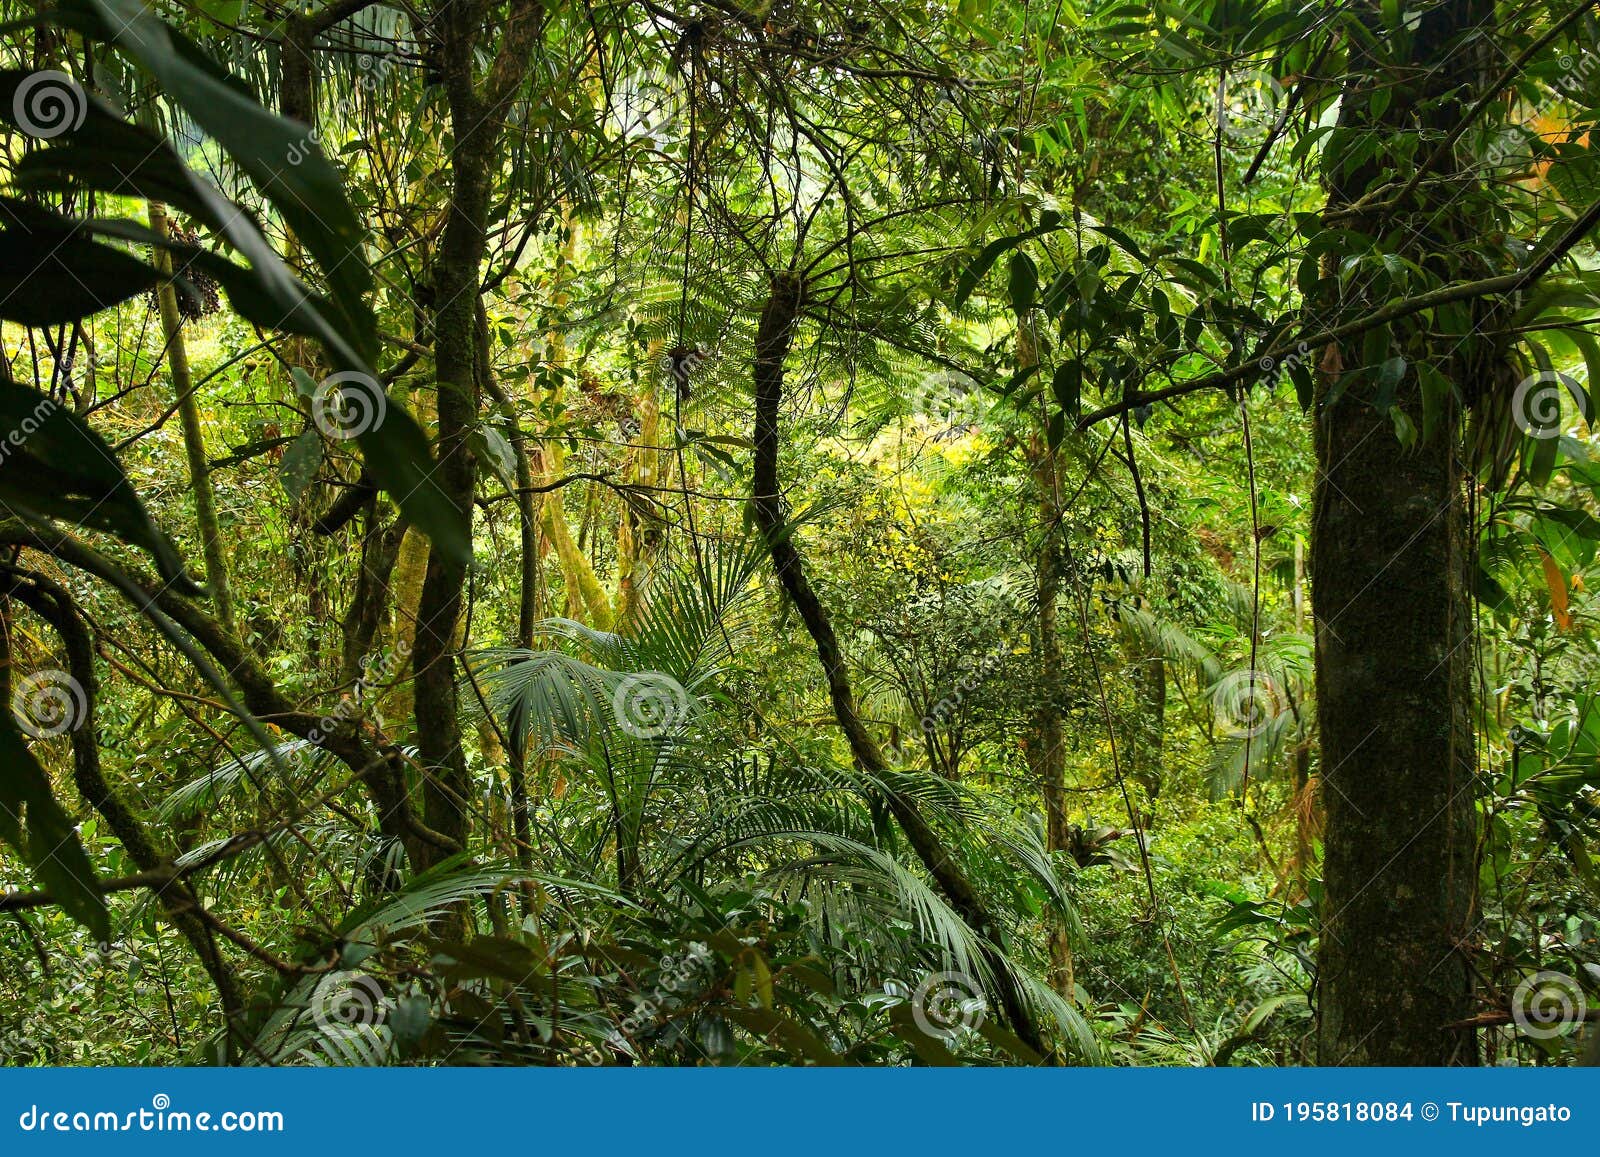 brazil mata atlantica rainforest